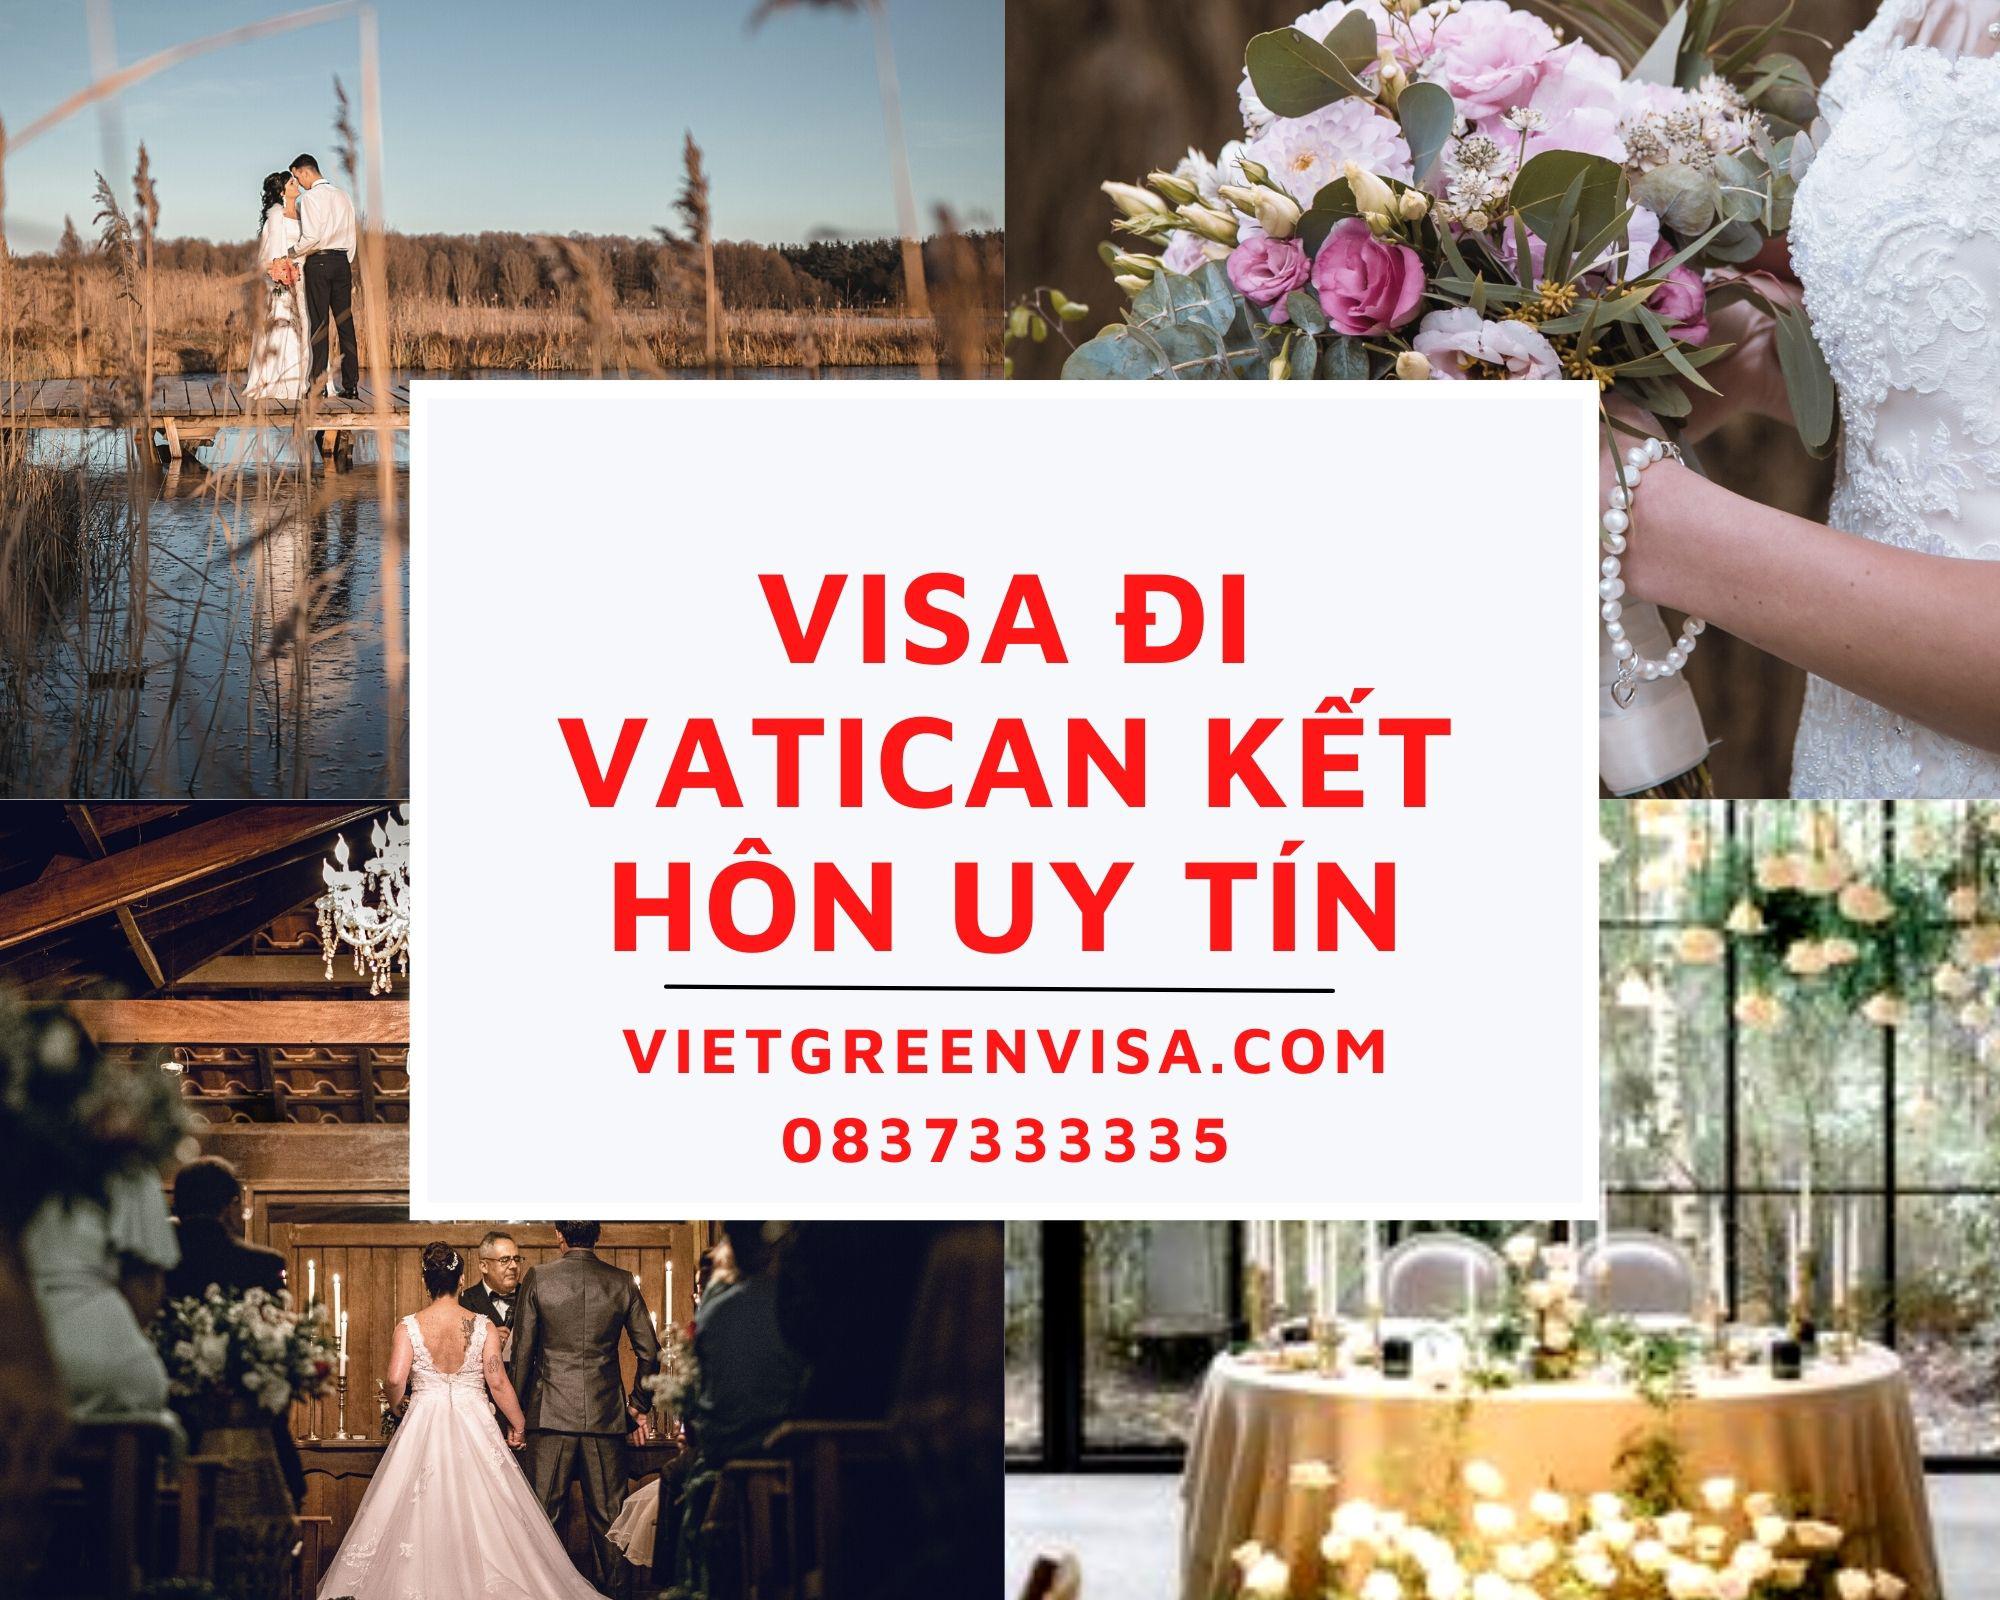 Dịch vụ visa đi Vatican kết hôn nhanh chóng